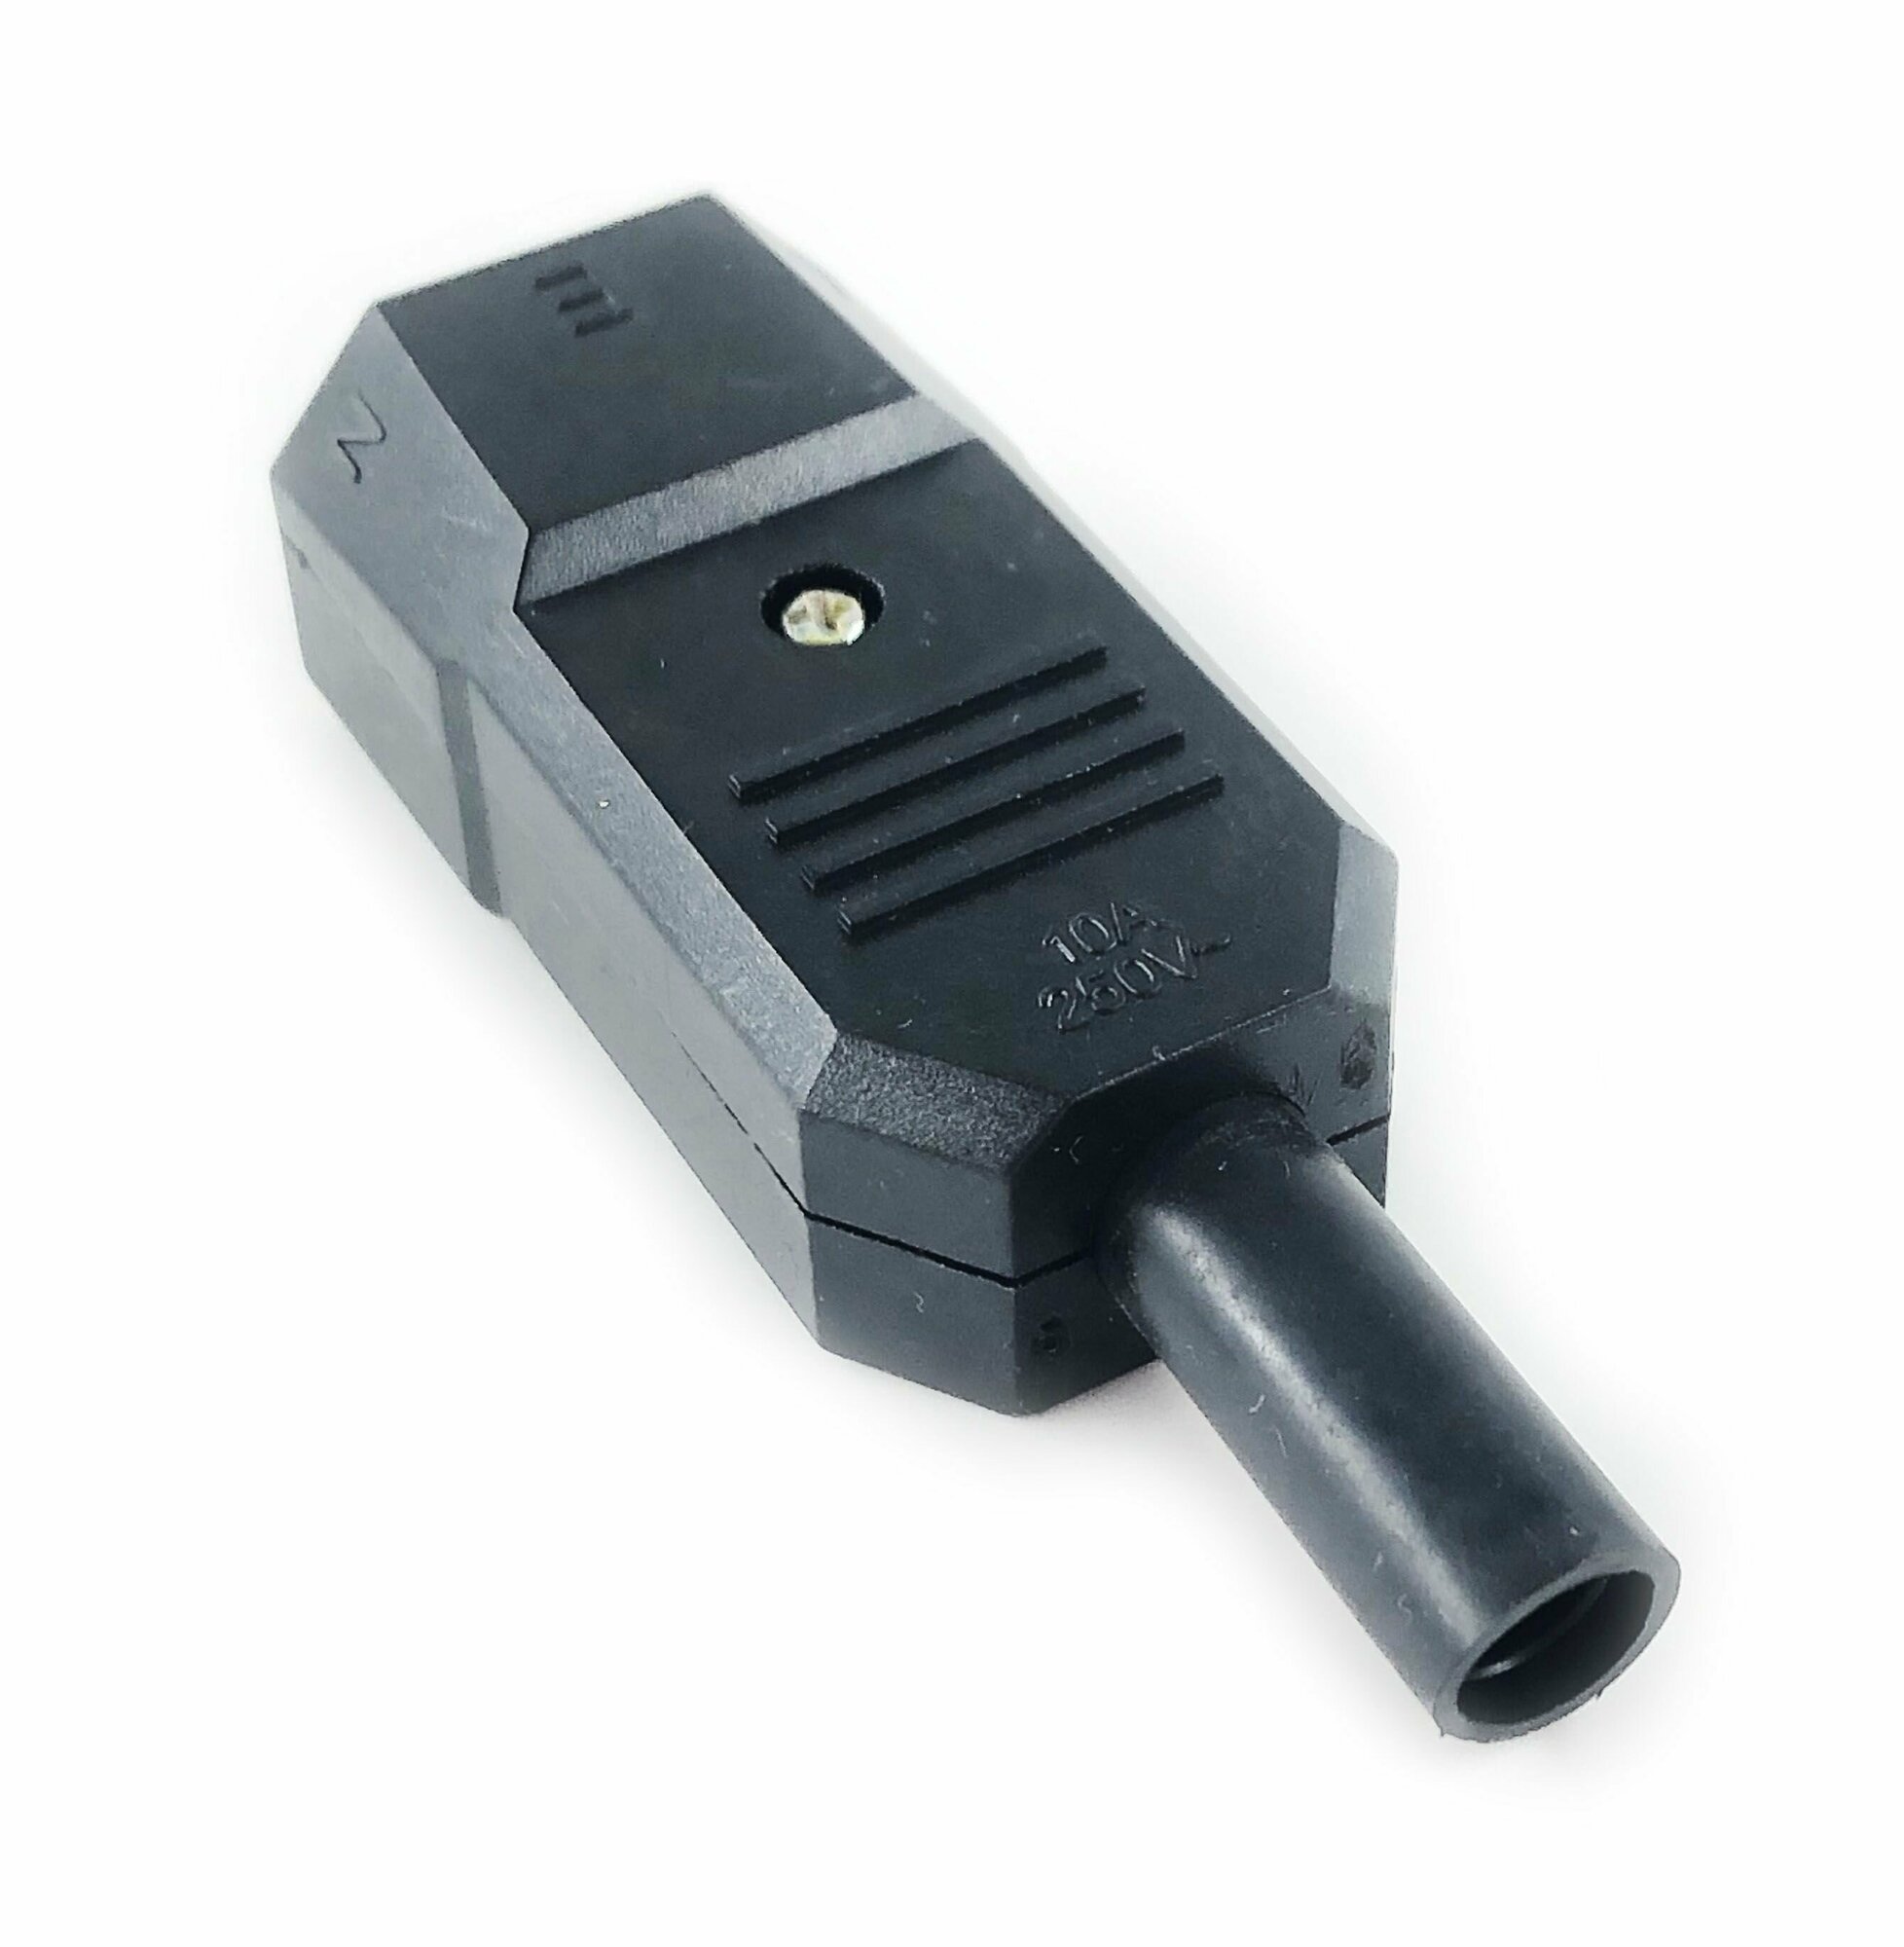 Вилка сетевая штекер "3 PIN" пластик на кабель 250V 10 A.